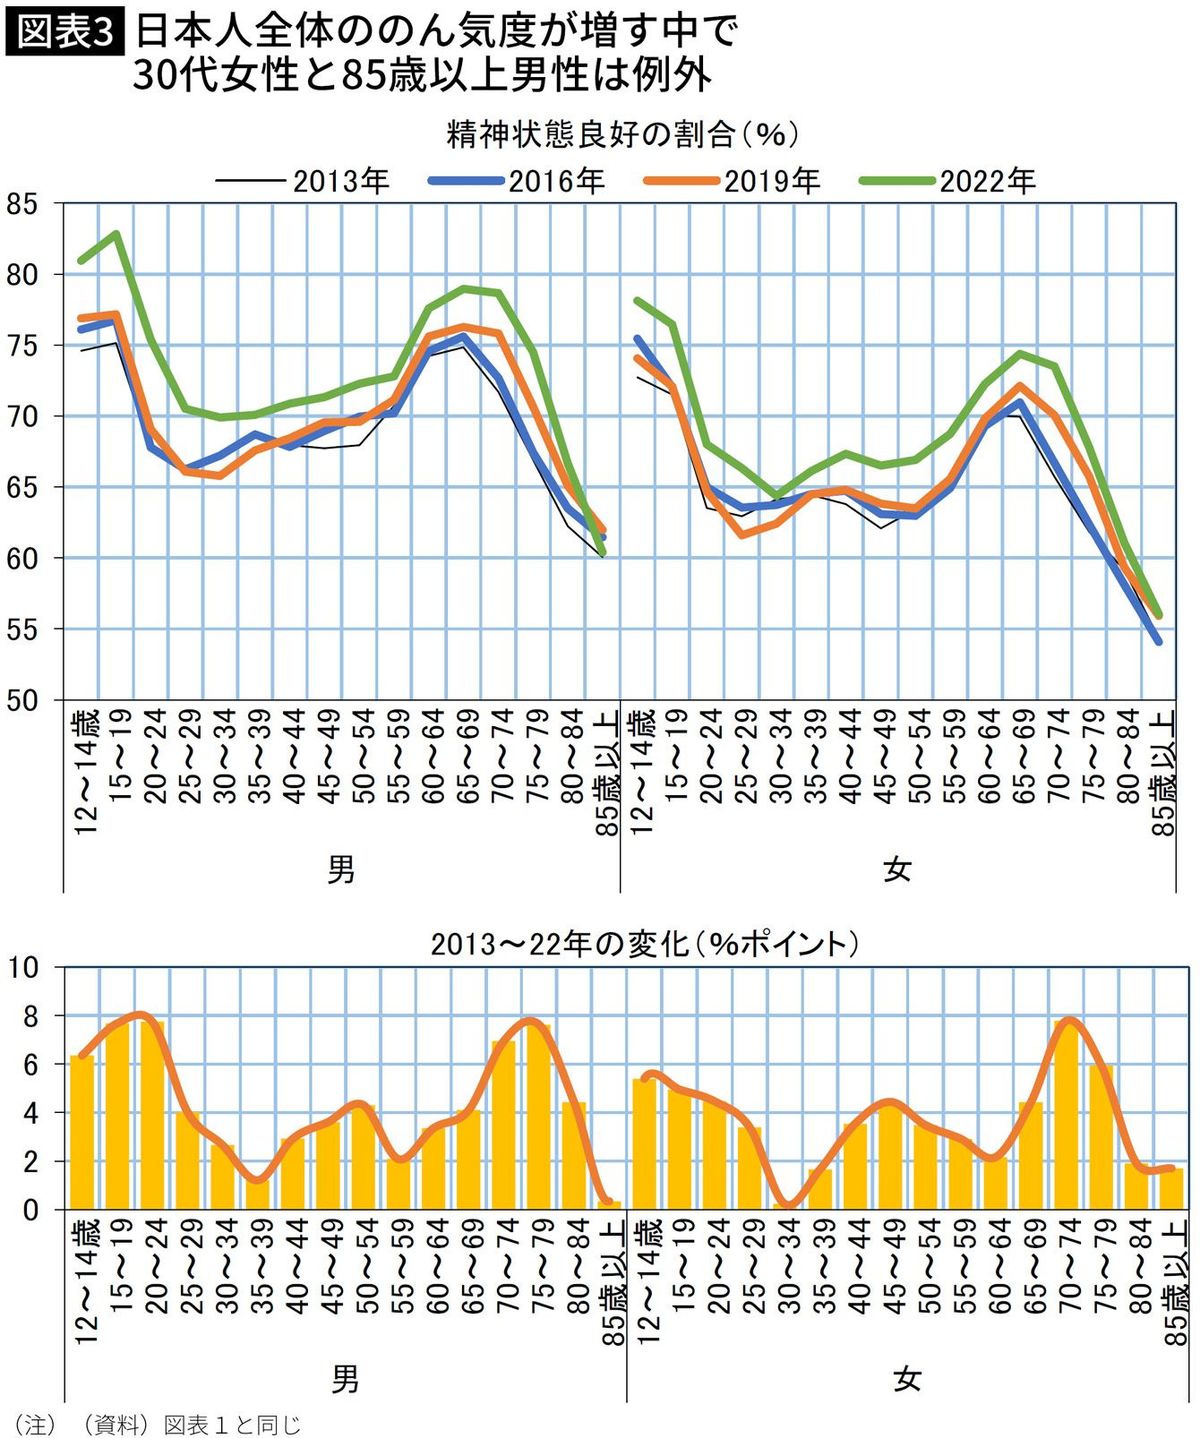 【図表】【図表】日本人全体ののん気度が増す中で30代女性と85歳以上男性は例外